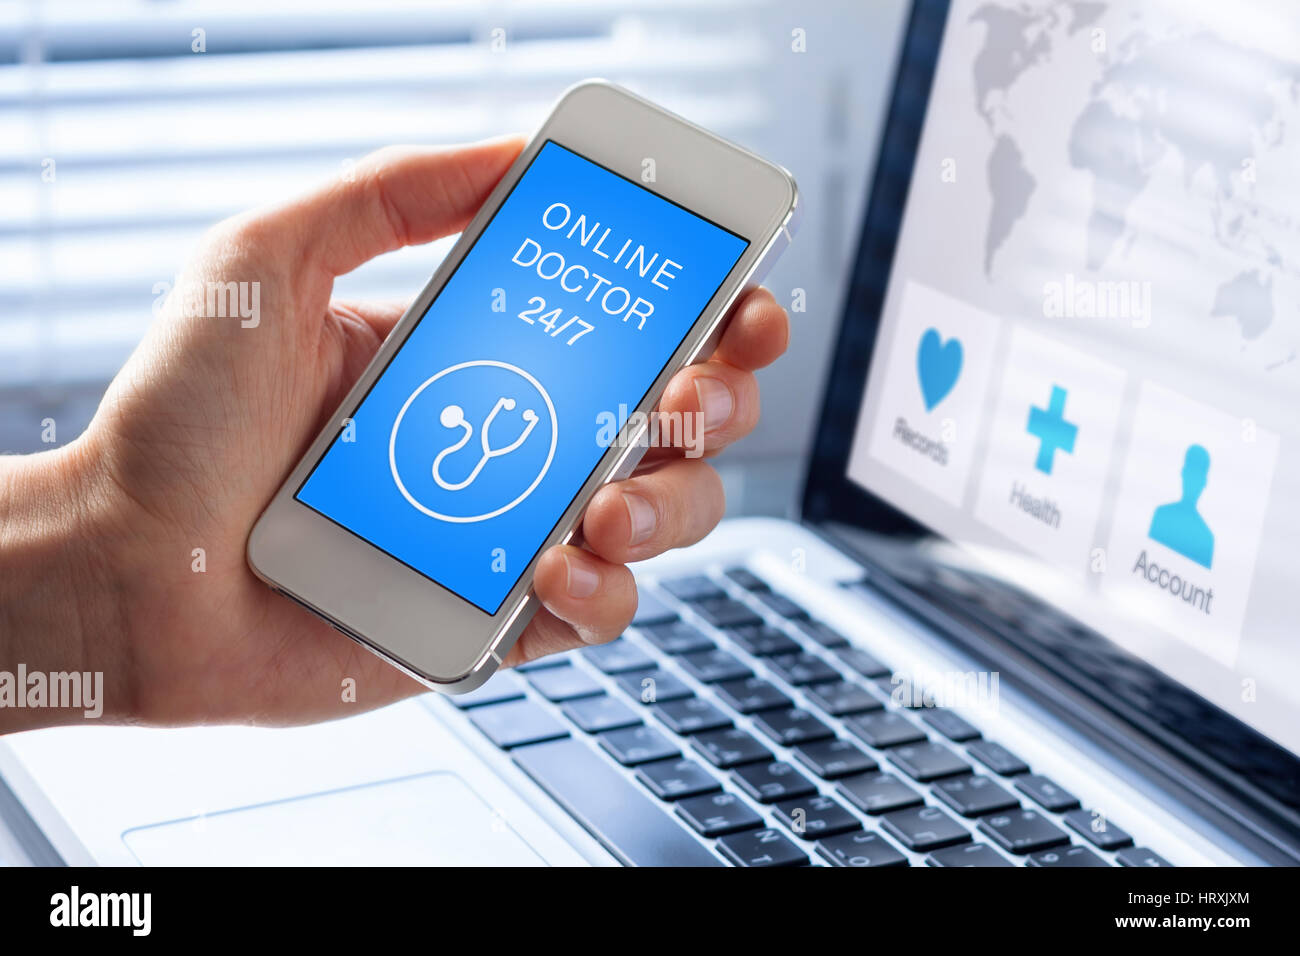 Online medico e sanitario app sul telefono cellulare con il concetto di persona che mostra lo schermo dello smartphone, la diagnosi remota o di consultazione Foto Stock